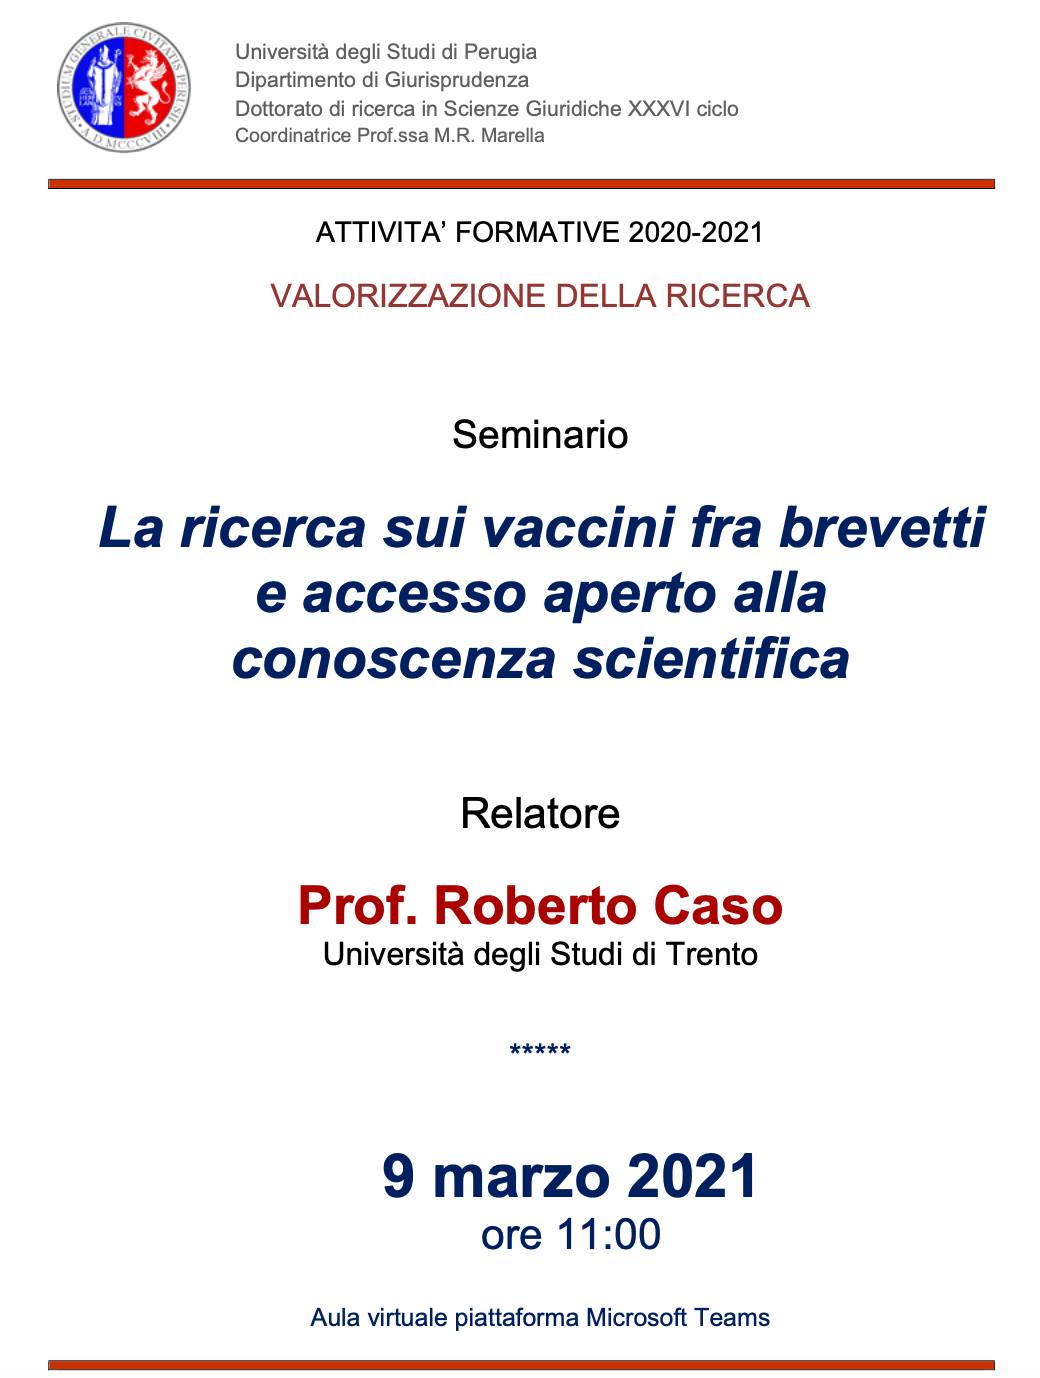 La ricerca sui vaccini fra brevetti e accesso aperto alla conoscenza scientifica: seminario di Roberto Caso